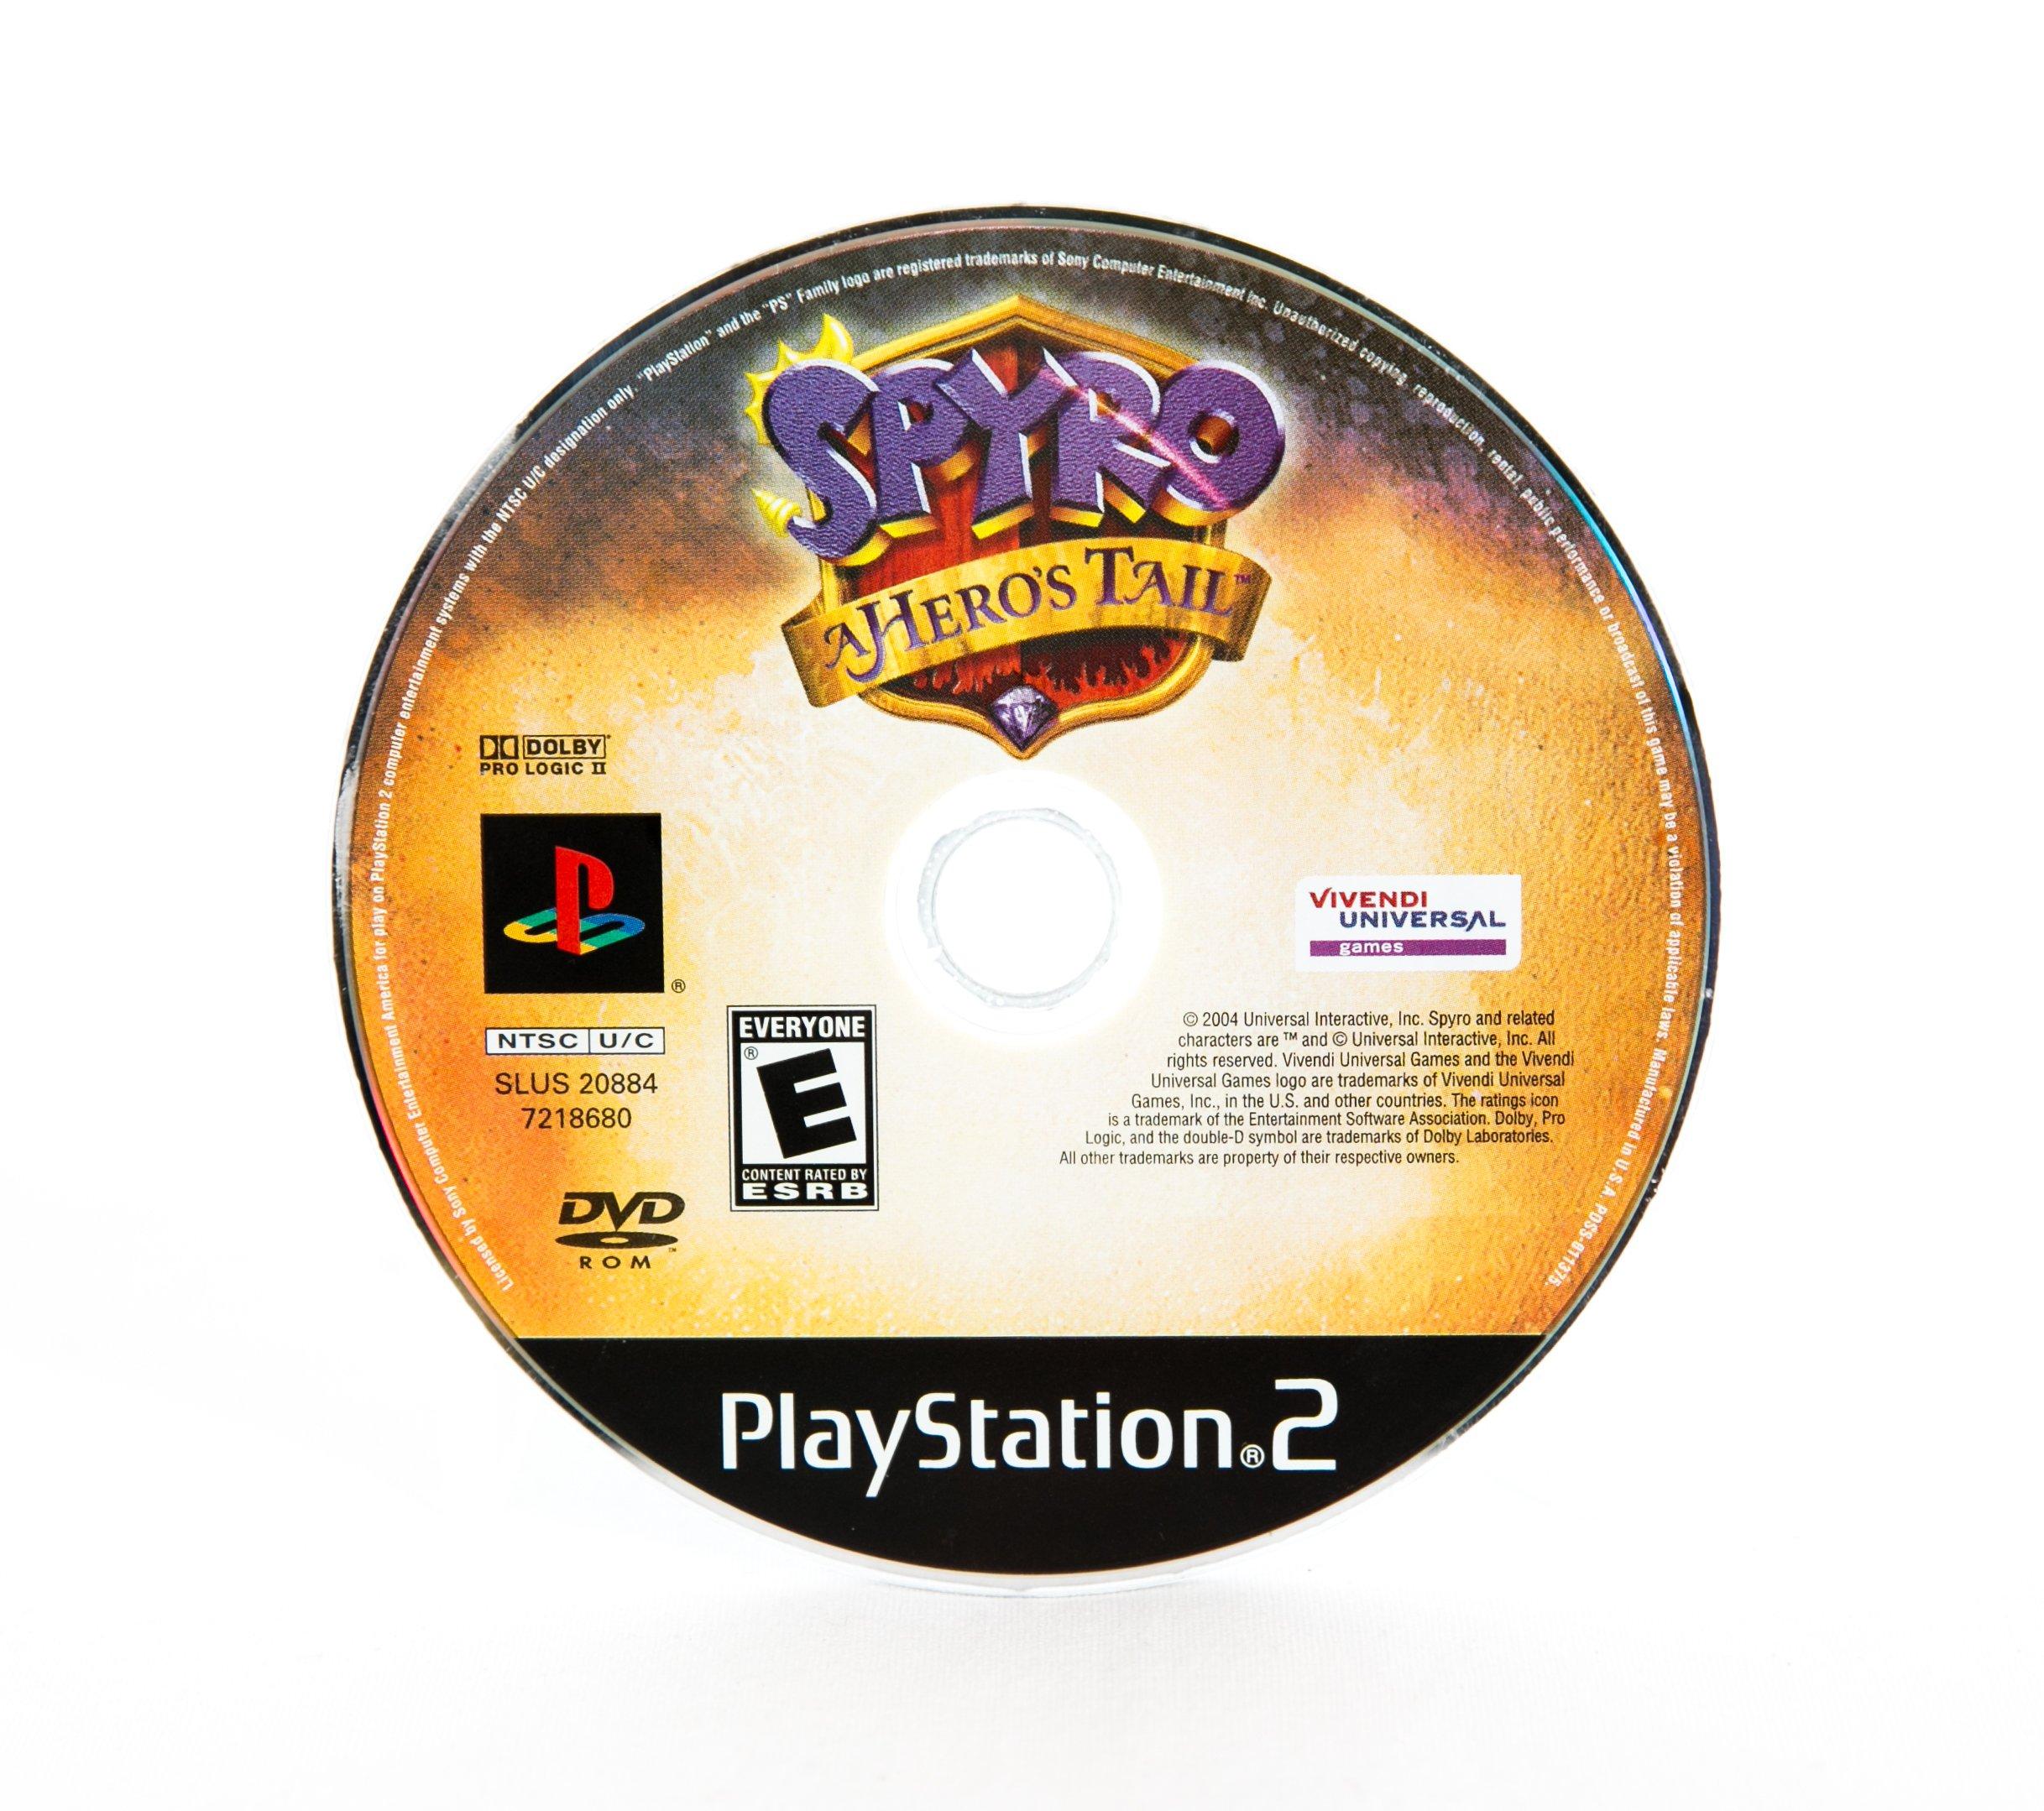 Pokémon Gold Version (1999) - MobyGames